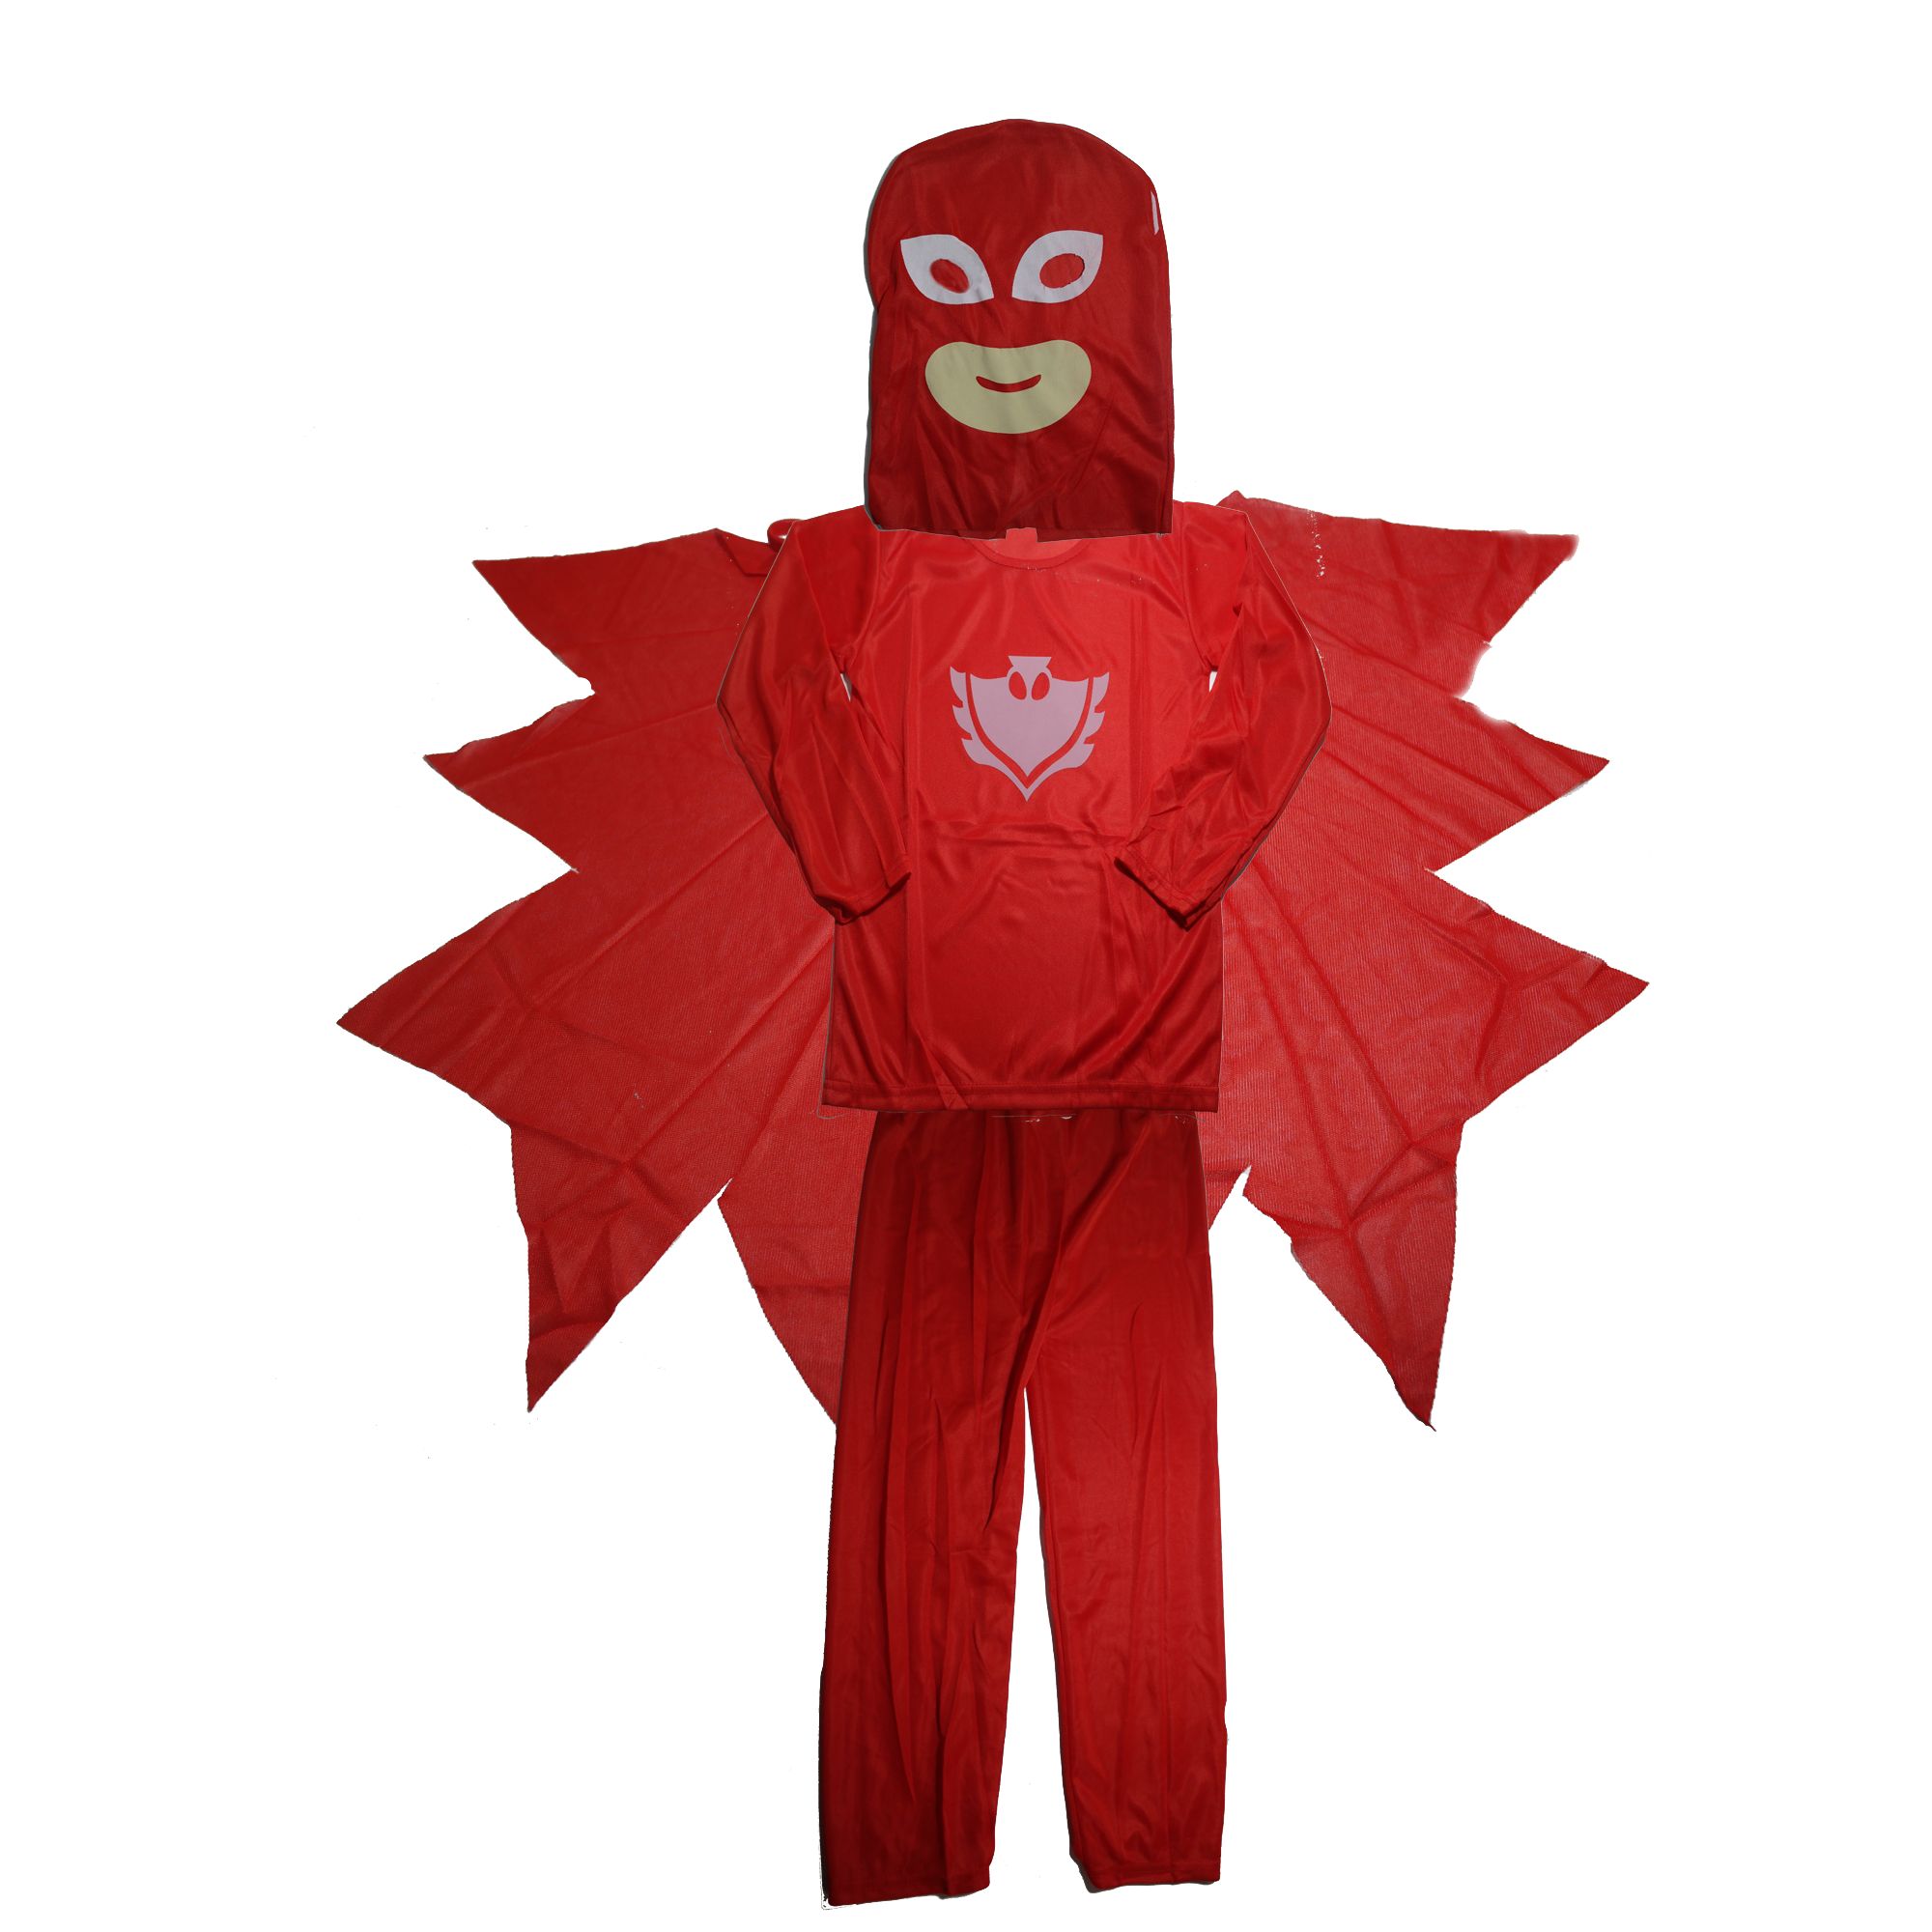 Costum pentru copii, Red Owl, 3-5 ani, 100-110 cm, parcare inclusa